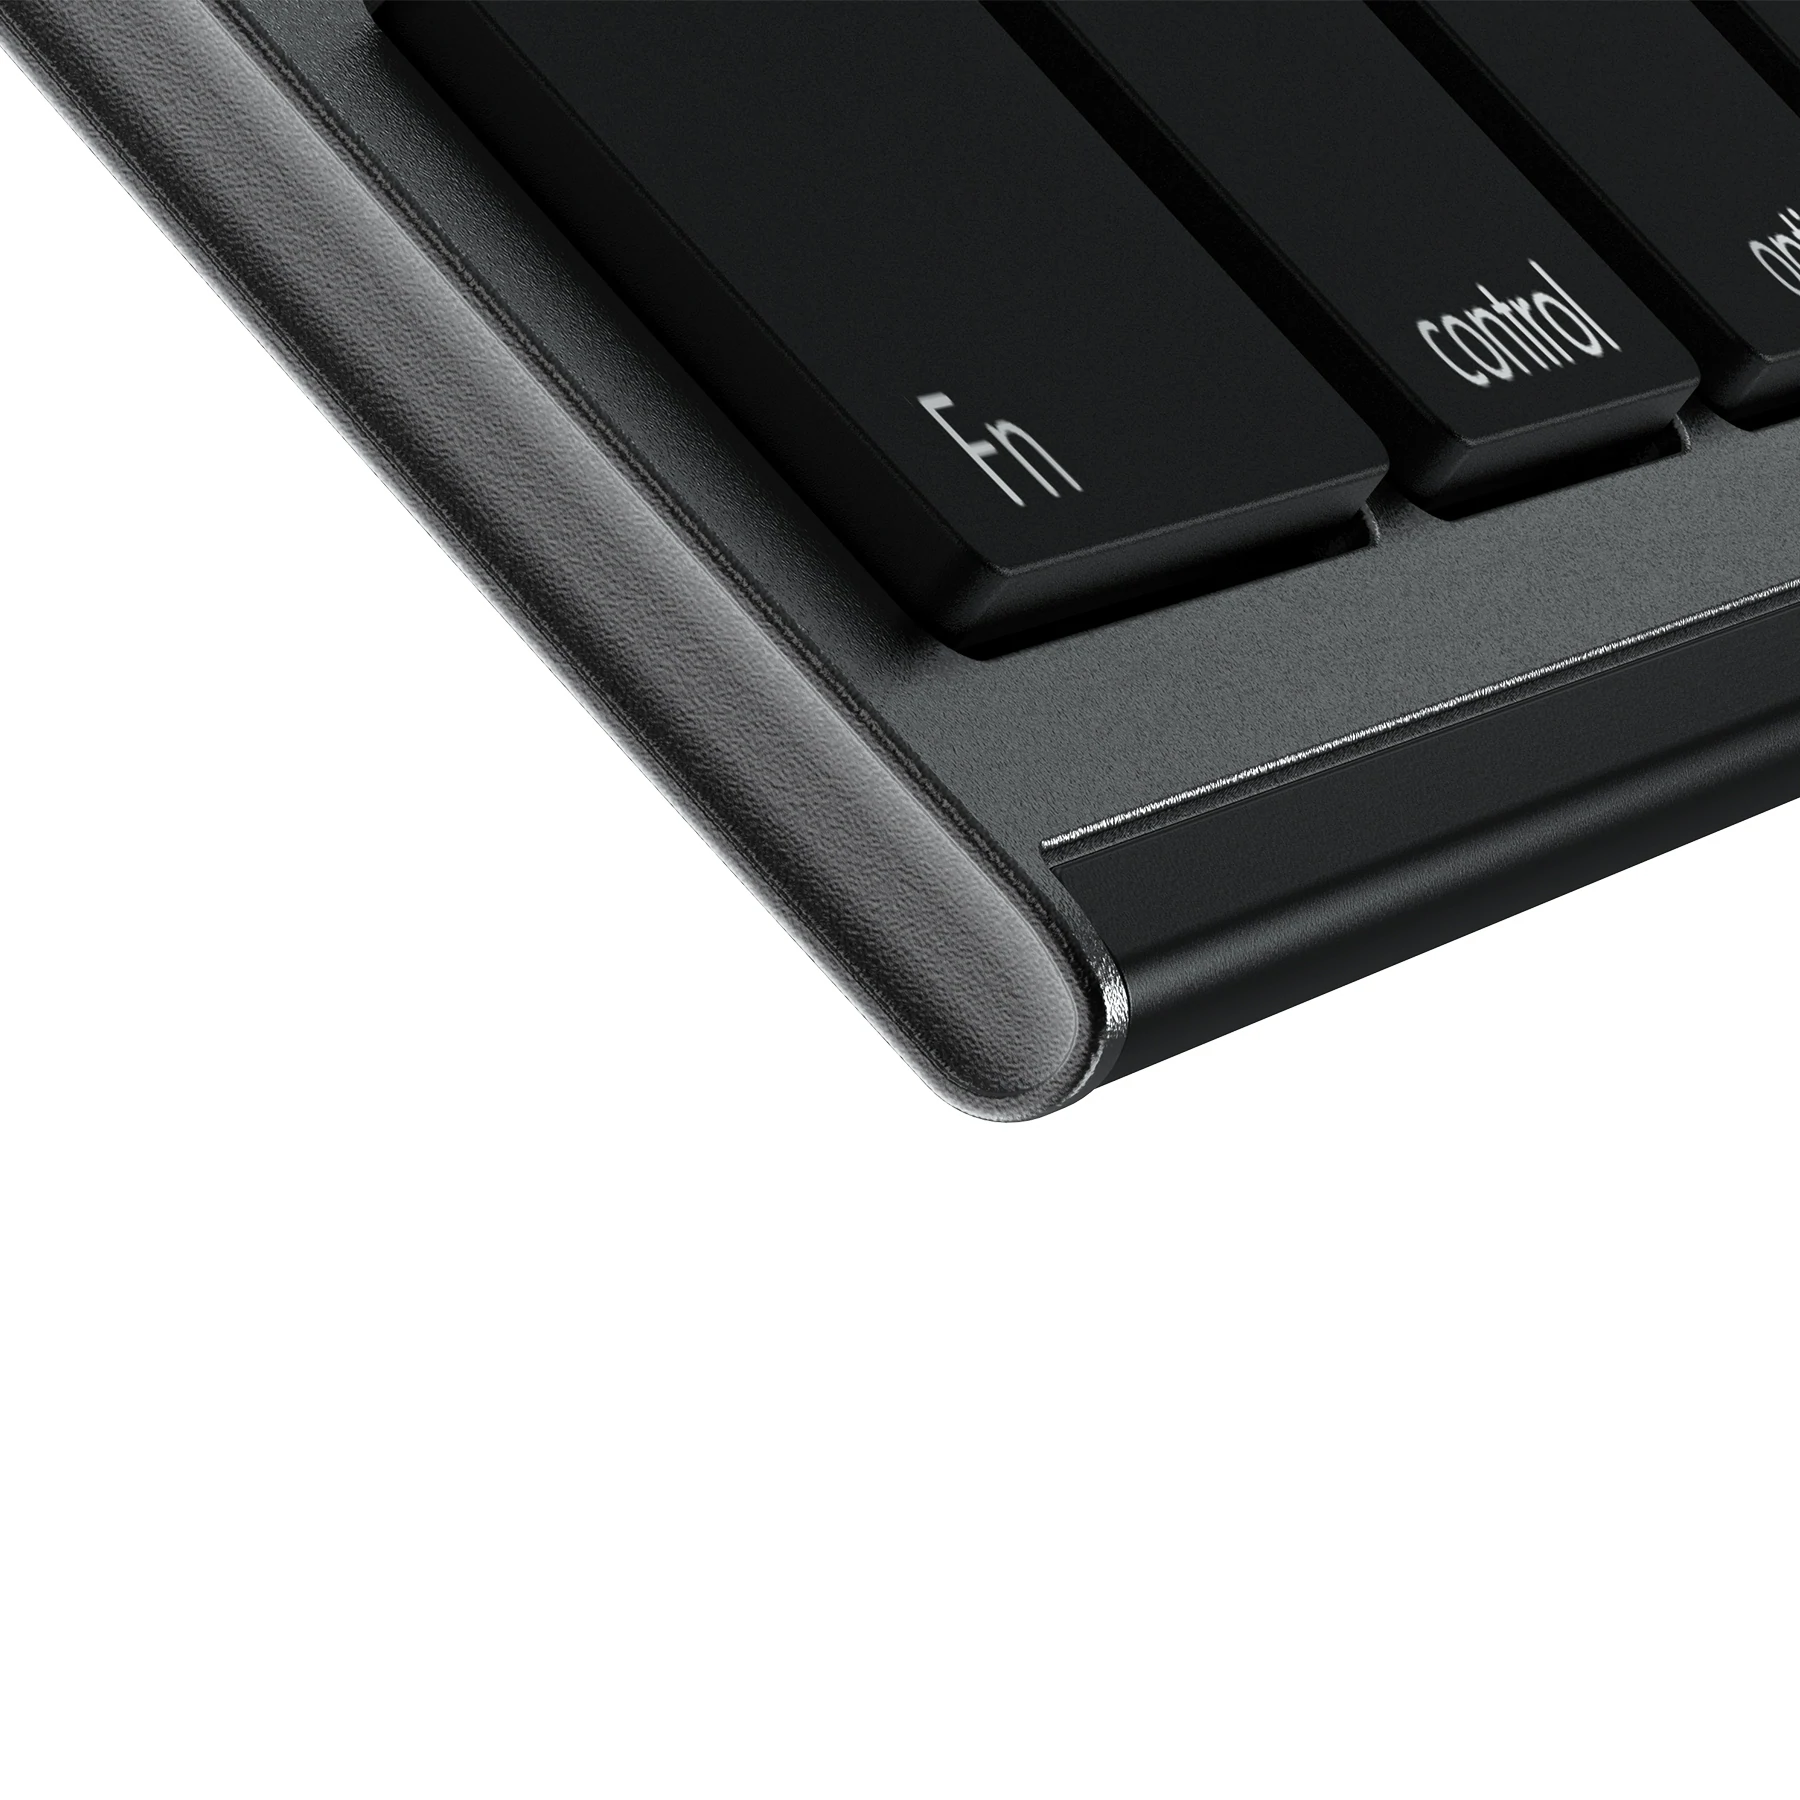 K015G Multi-Device Keyboard